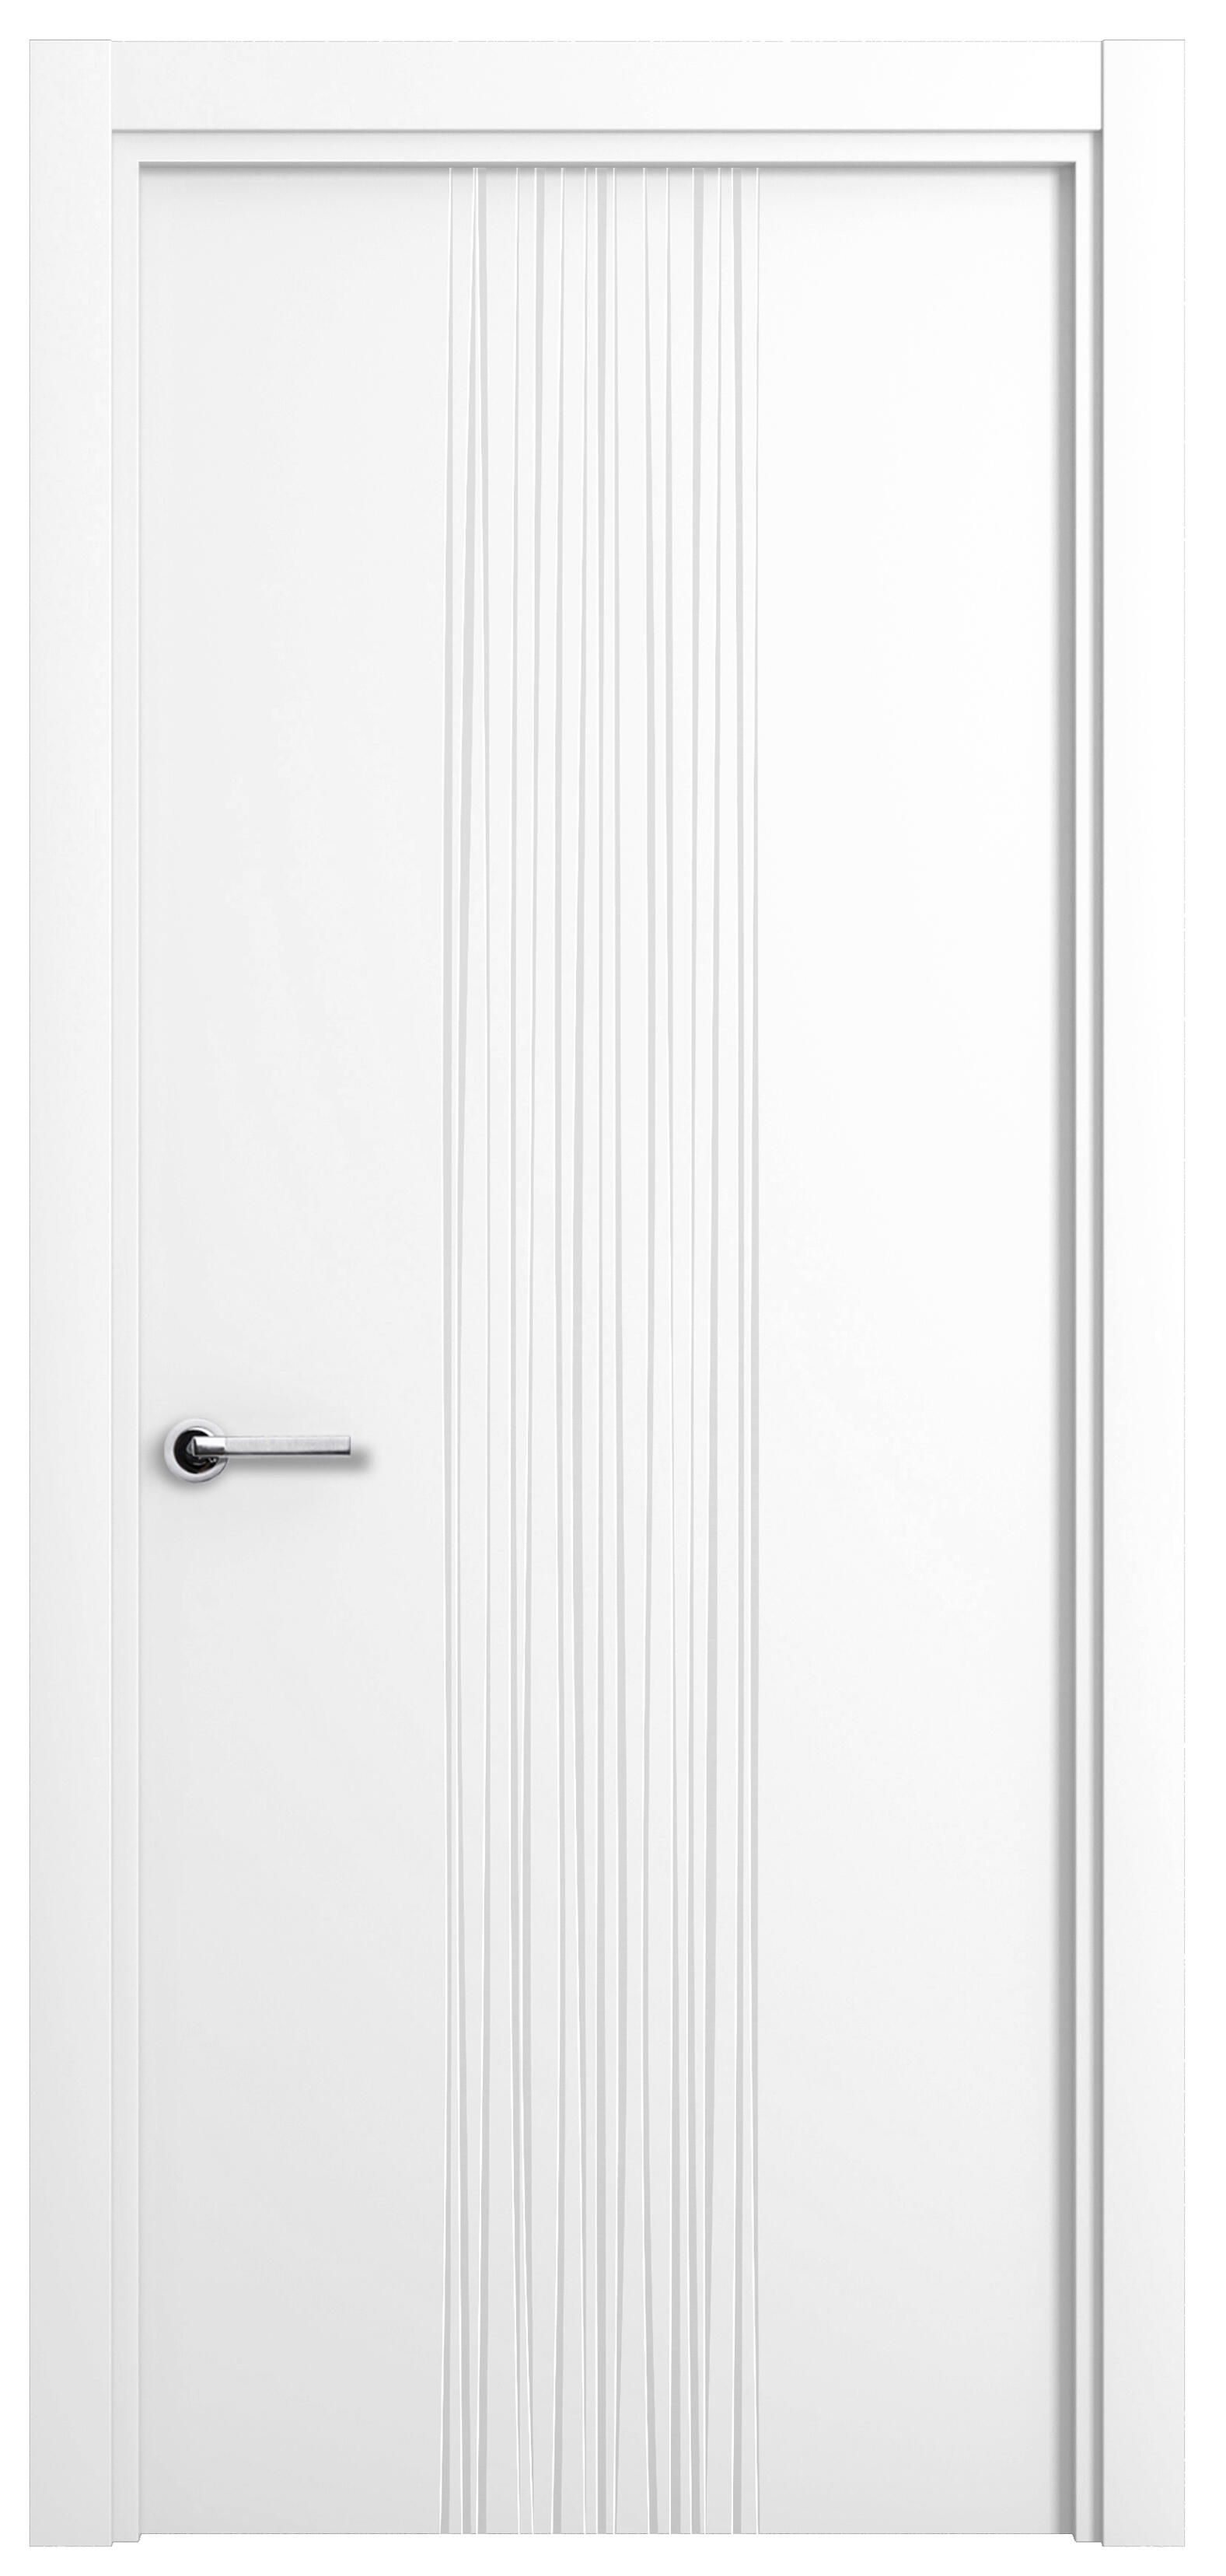 Puerta quevedo premium blanco apertura derecha 9x62.5cm